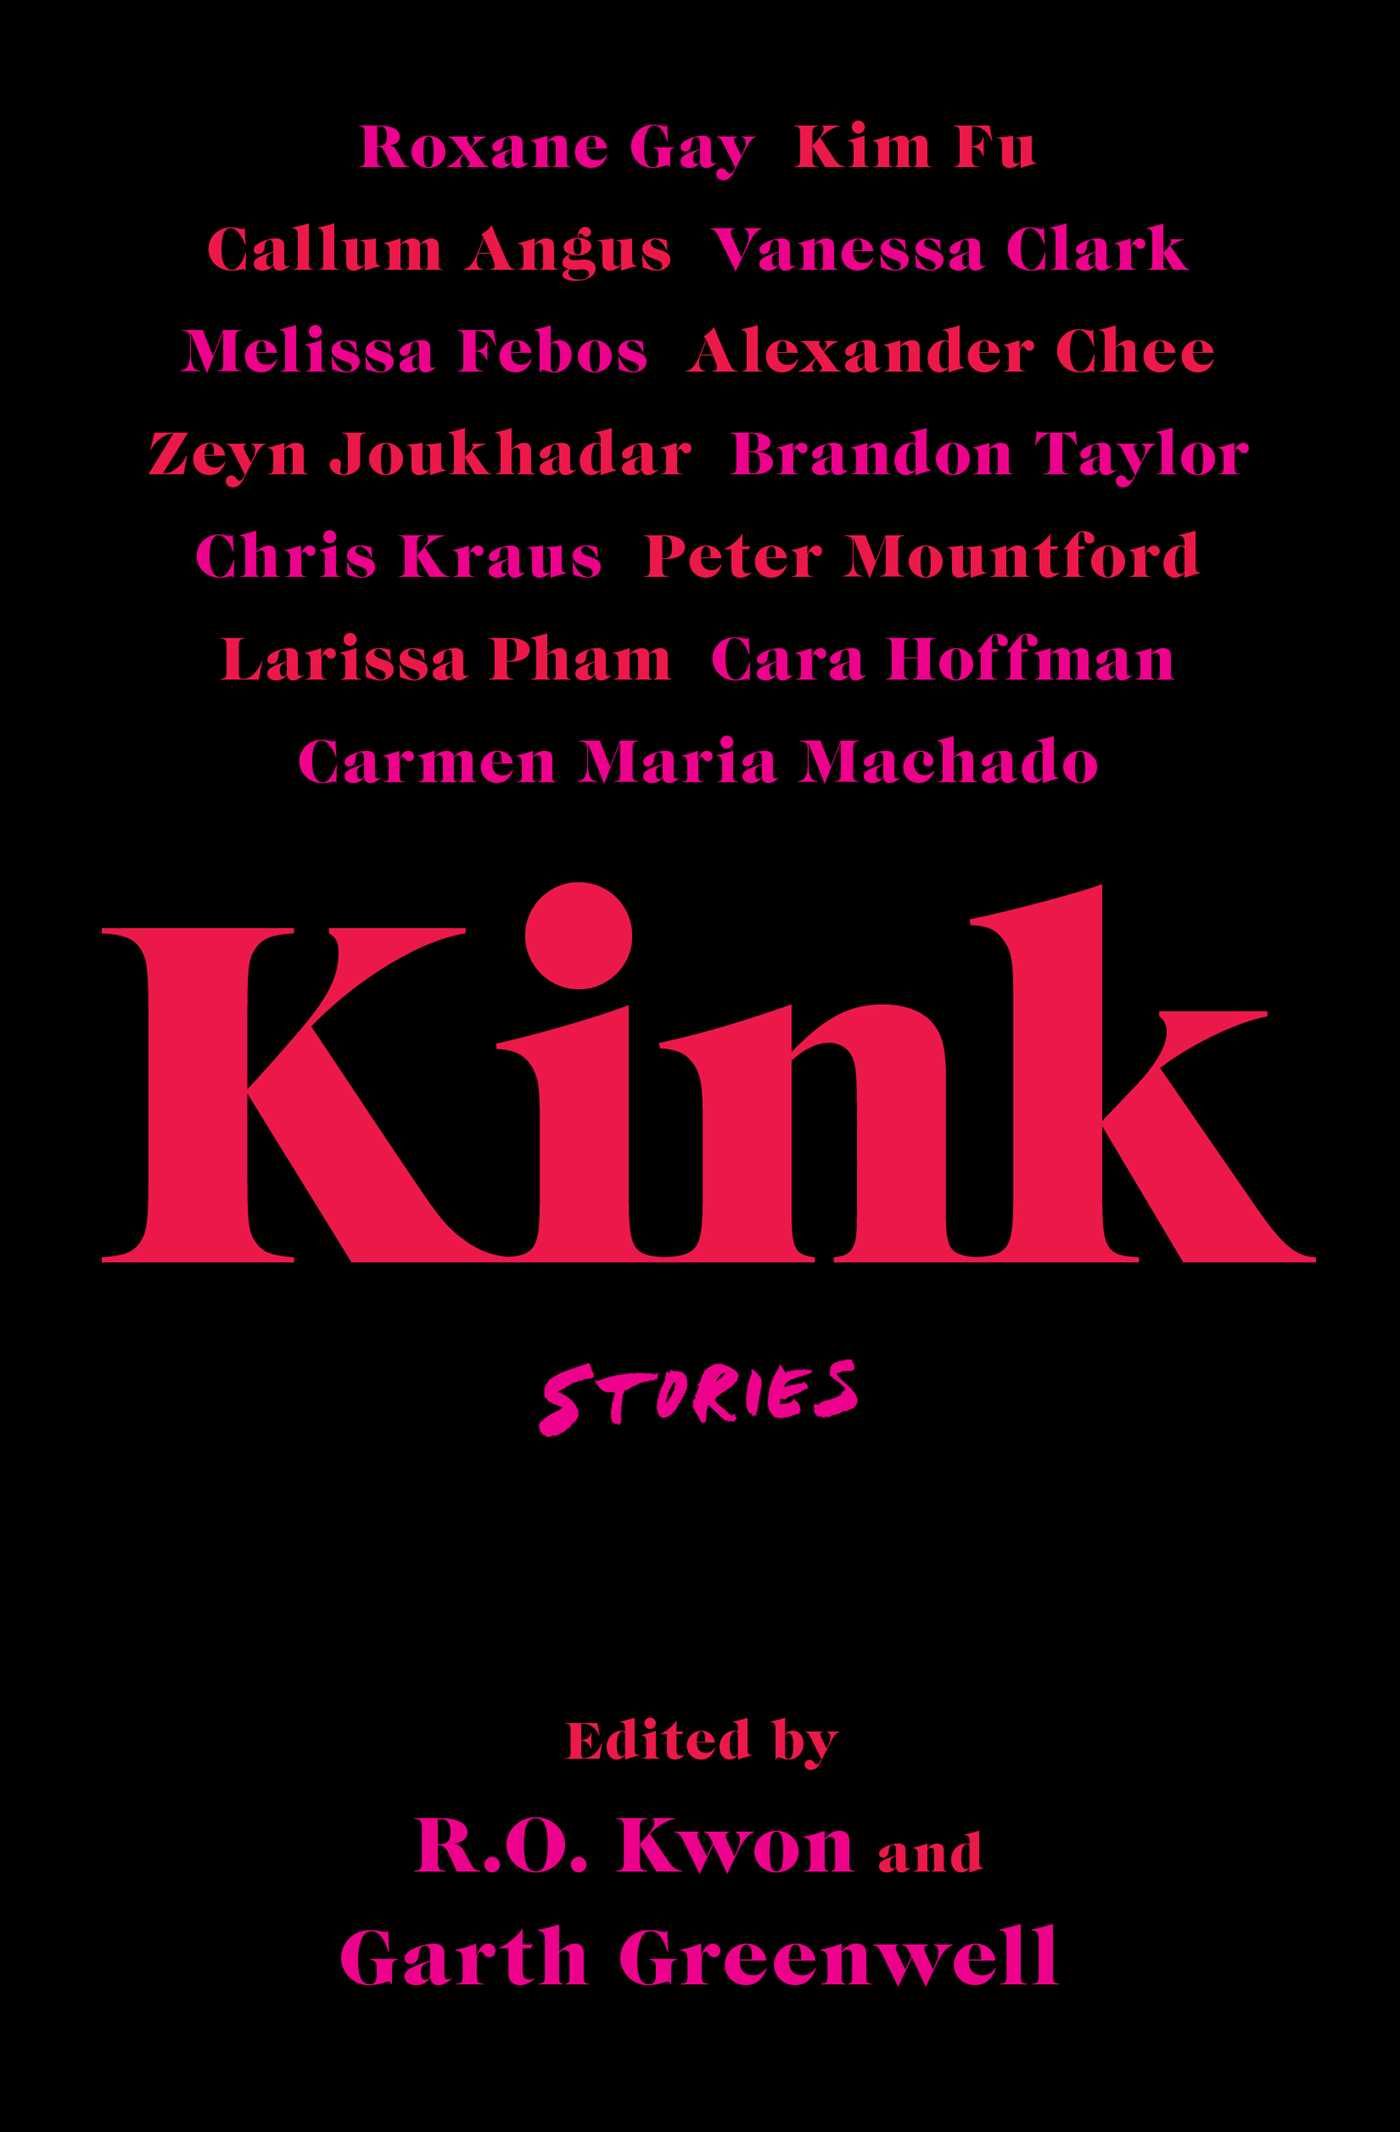 Kink by R.O. Kwon and Garth Greenwell